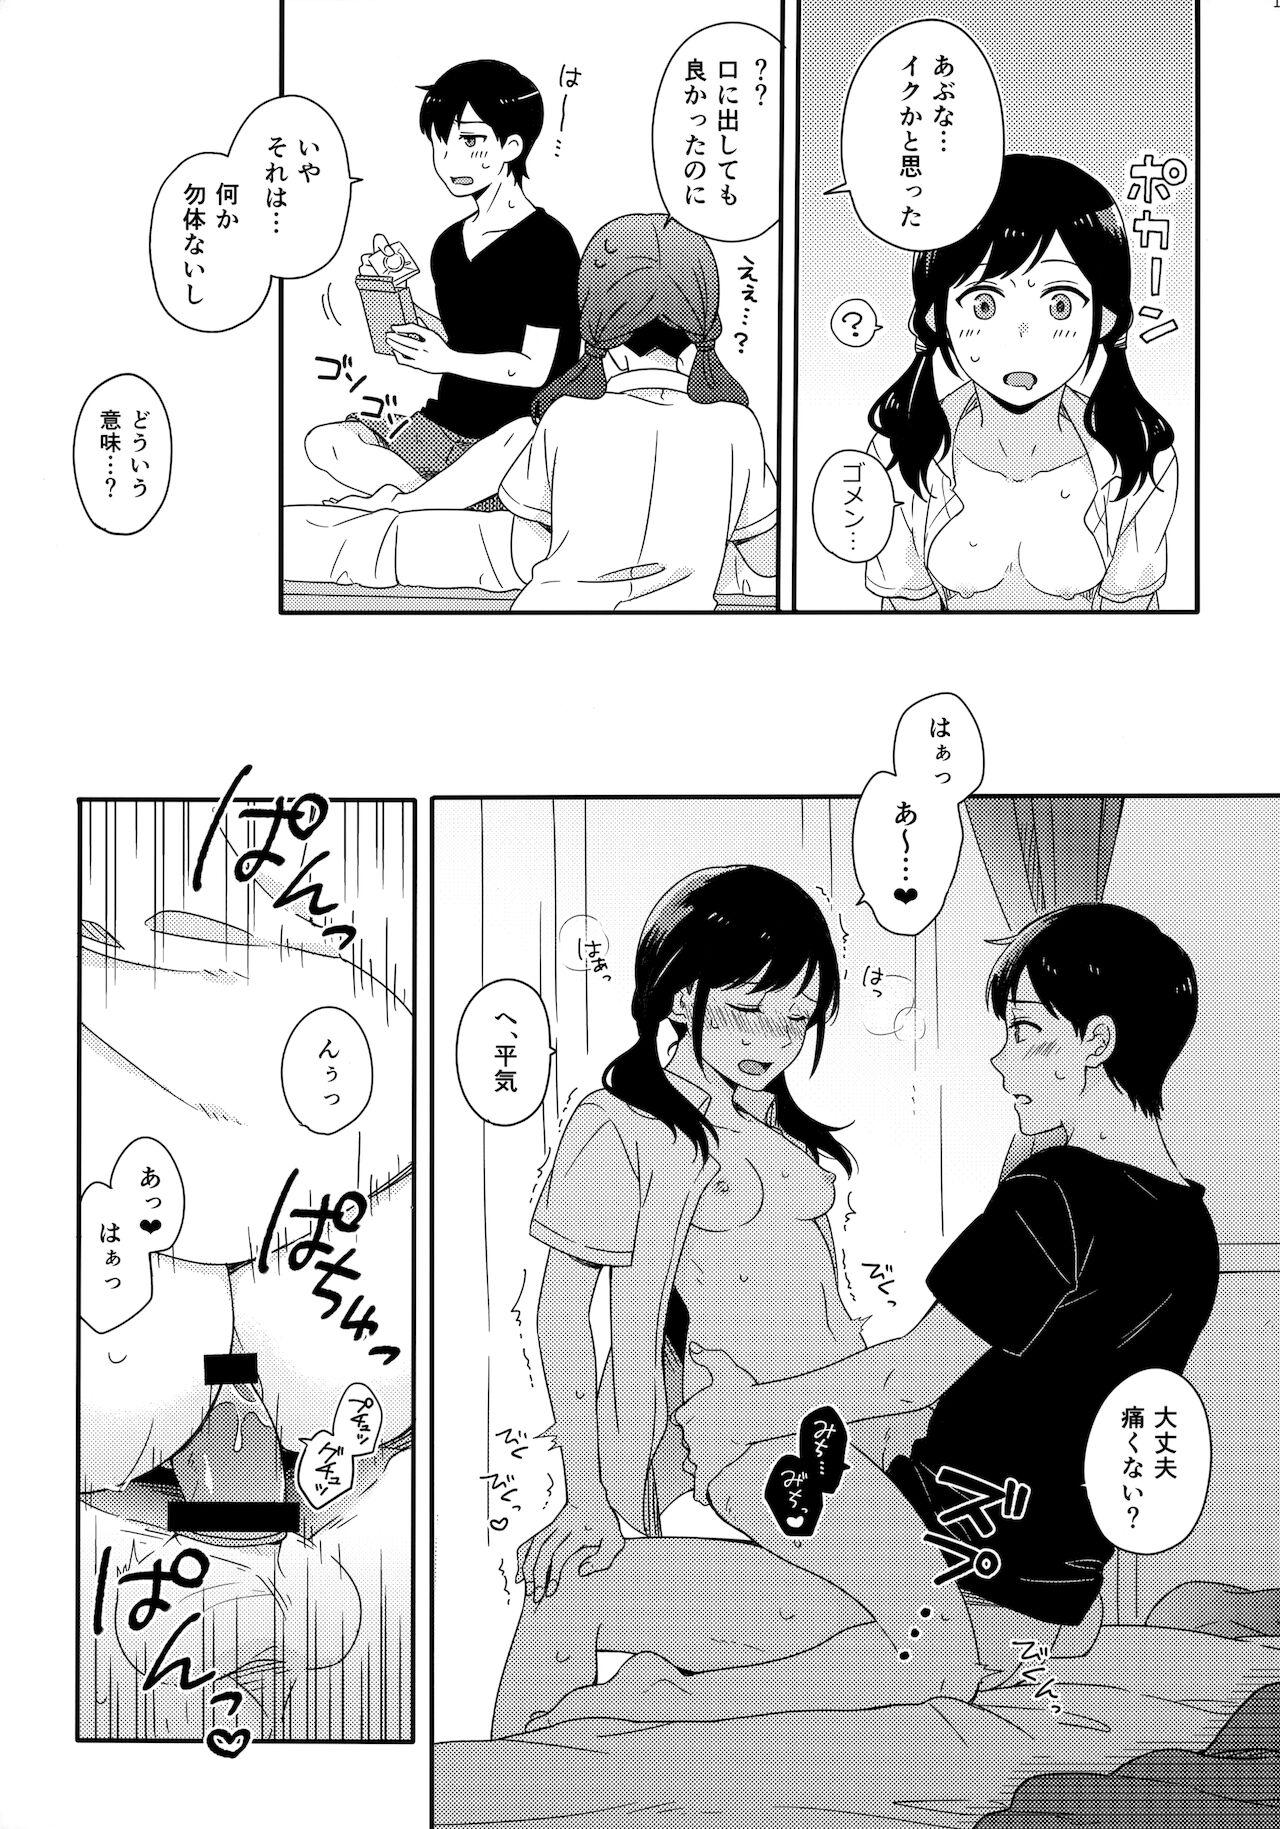 3some Sorekara no Boku-tachi wa - Tenki no ko | weathering with you Gay Uncut - Page 10